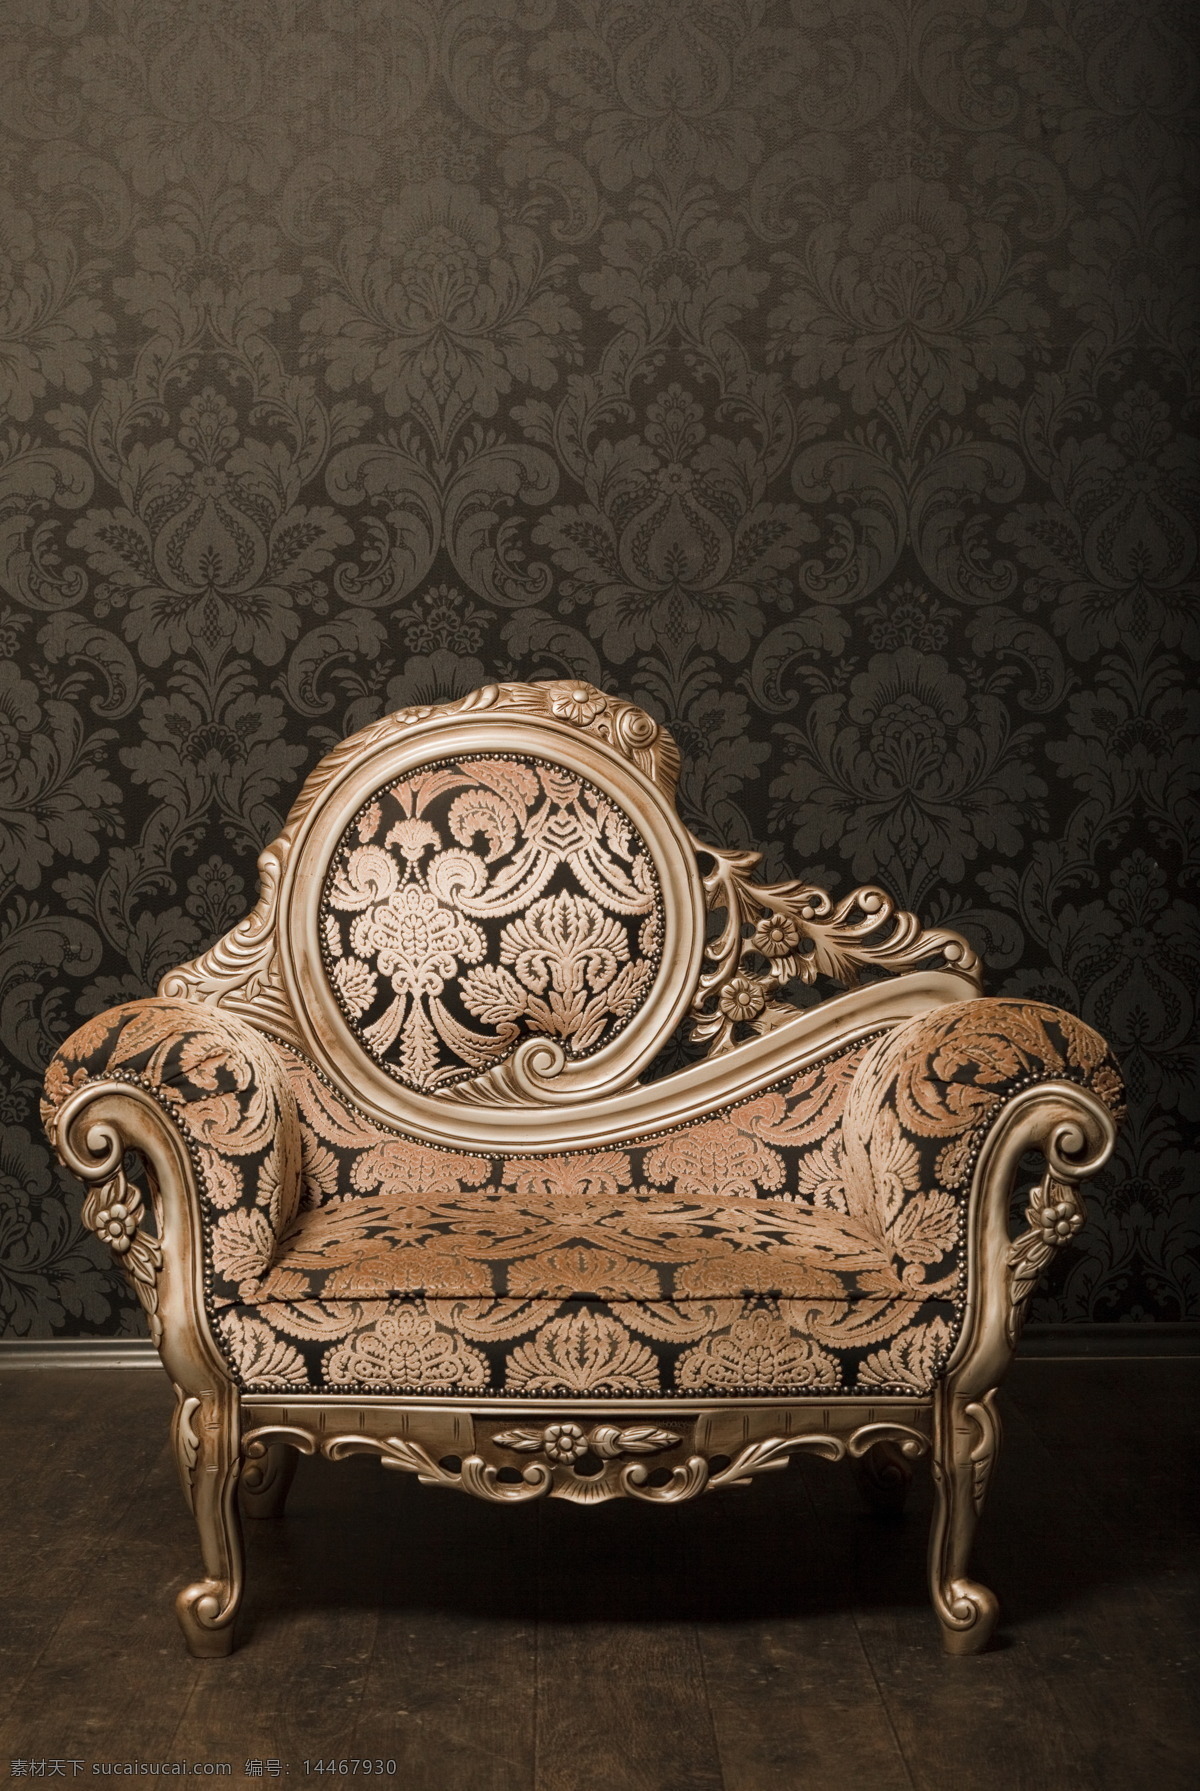 欧式 沙发 欧式沙发 沙发椅子 复古沙发 地板 壁纸 花纹壁纸 复古家具 室内设计 环境家居